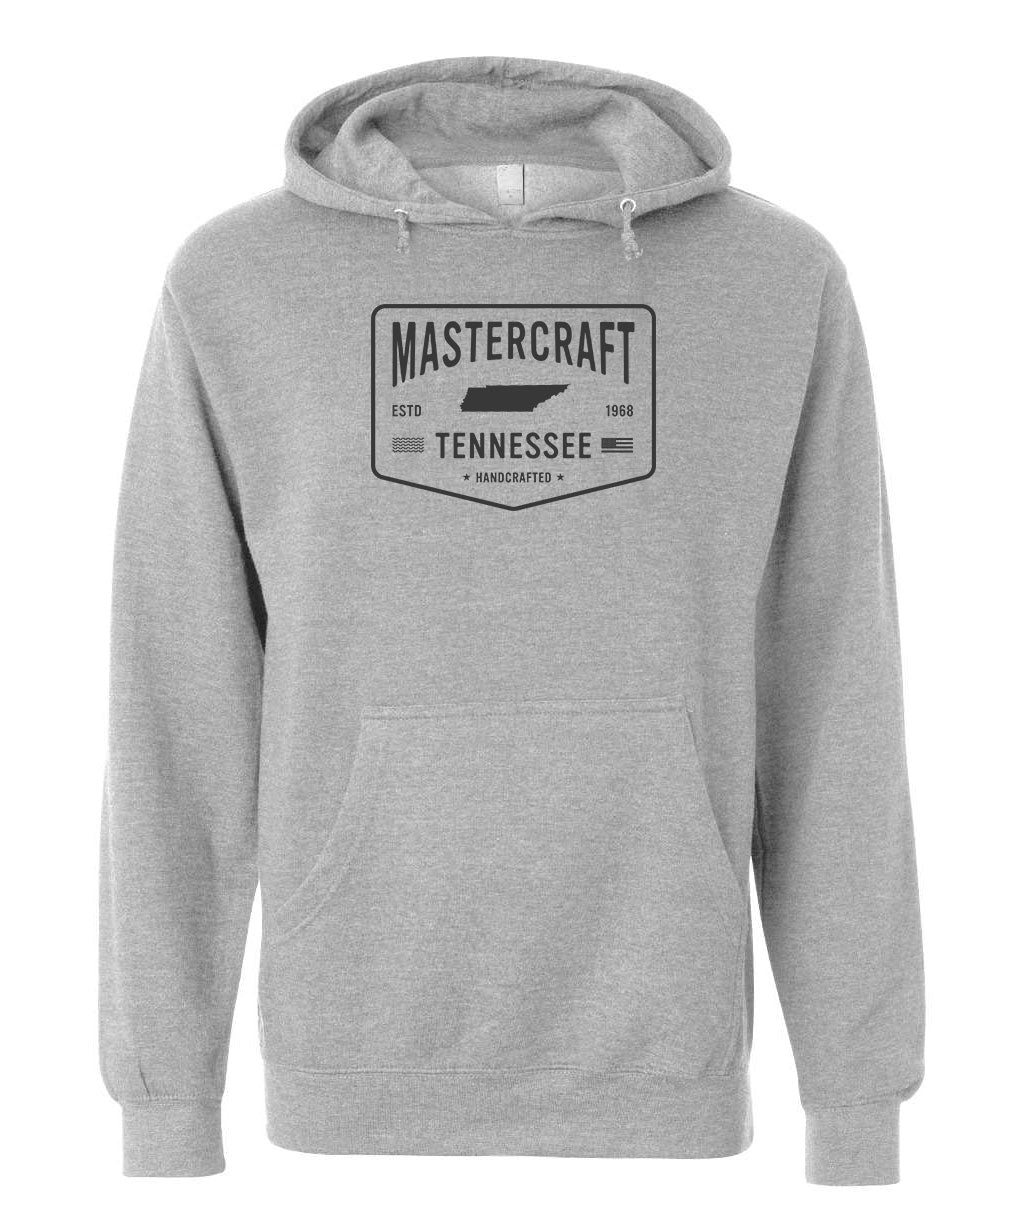 MasterCraft Handcrafted Men's Hooded Sweatshirt